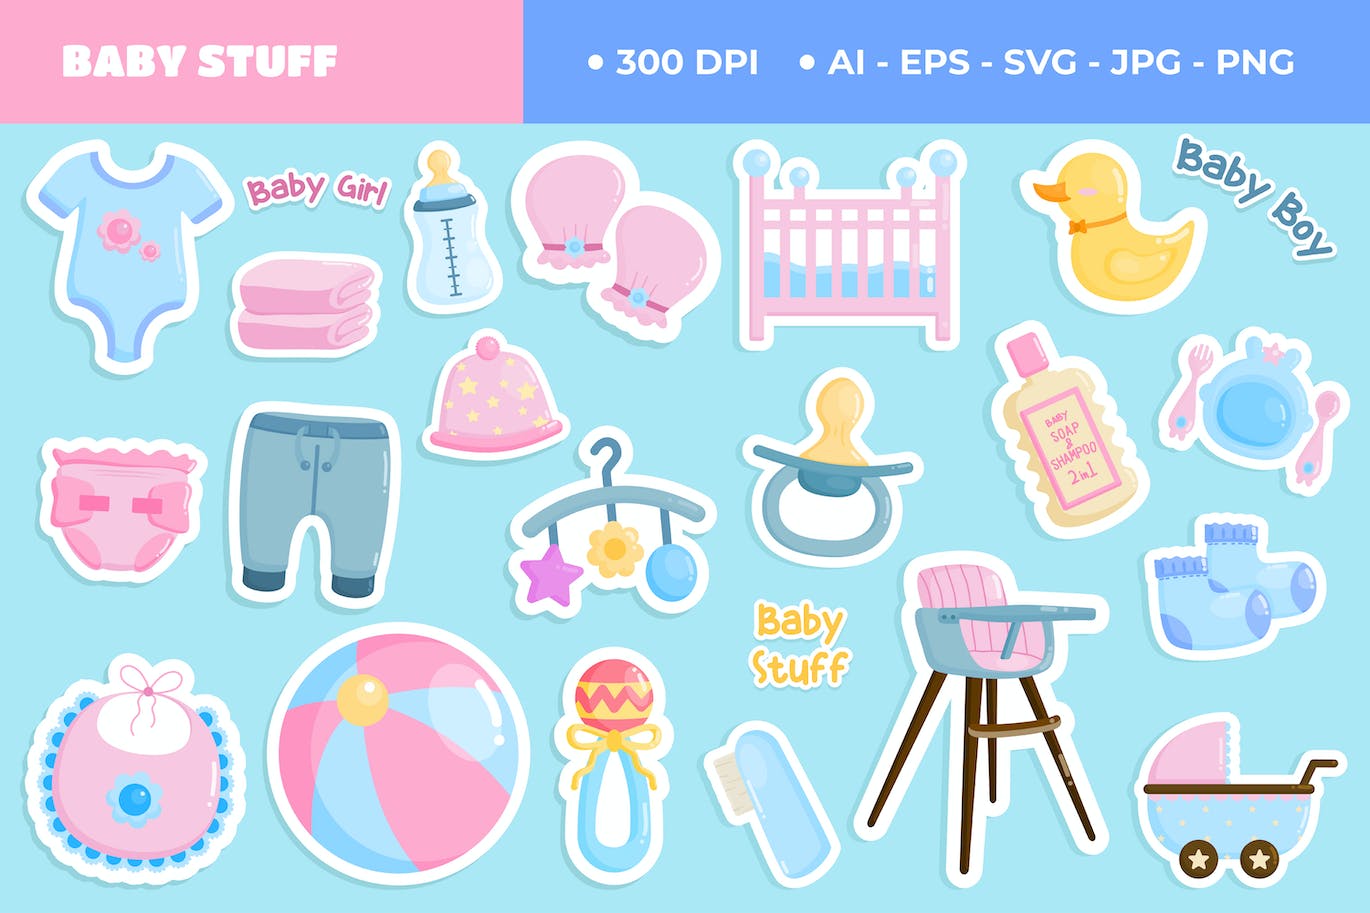 婴儿护理用品可爱贴纸插画套装 Baby Care Stuff Cute Sticker Set-1